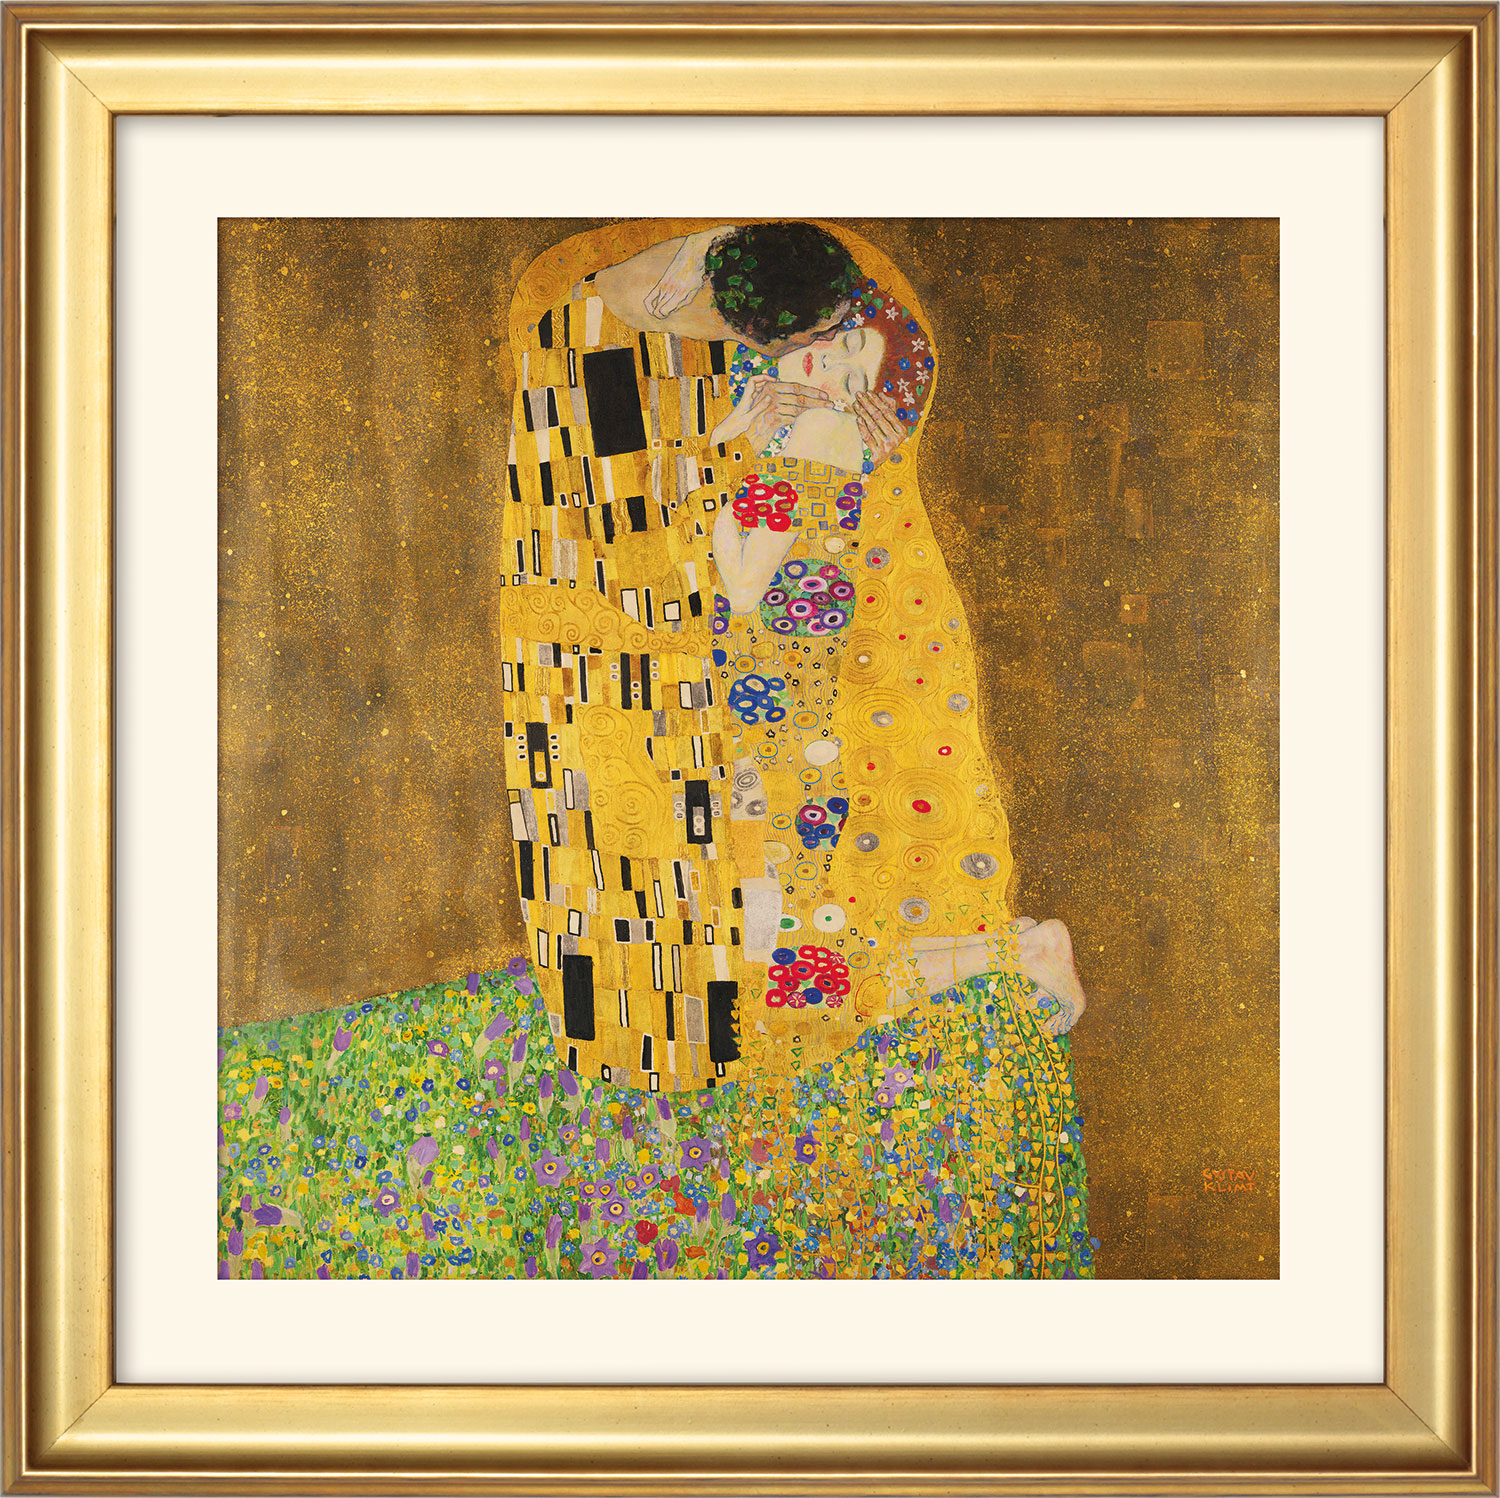 Bild "Der Kuss" (1907-08), gerahmt by Gustav Klimt